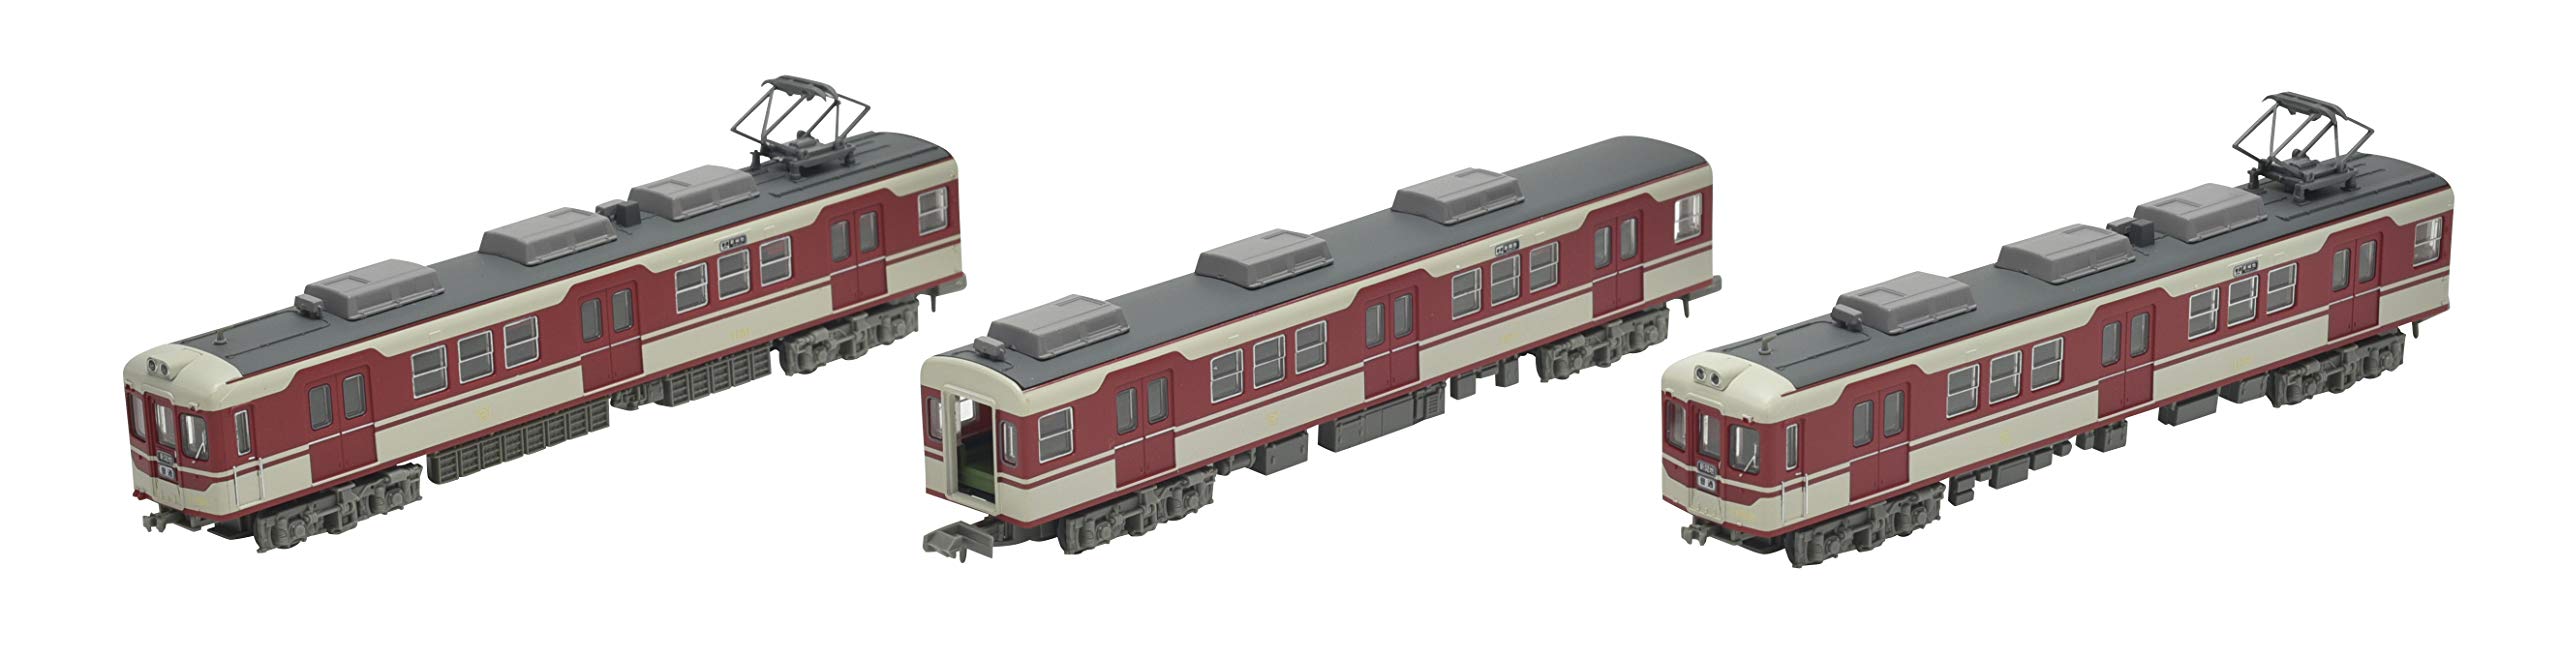 Tomytec Kobe Electric Railway Type DE1150 1151 Coffret de 3 voitures Diorama-Supplies Édition limitée